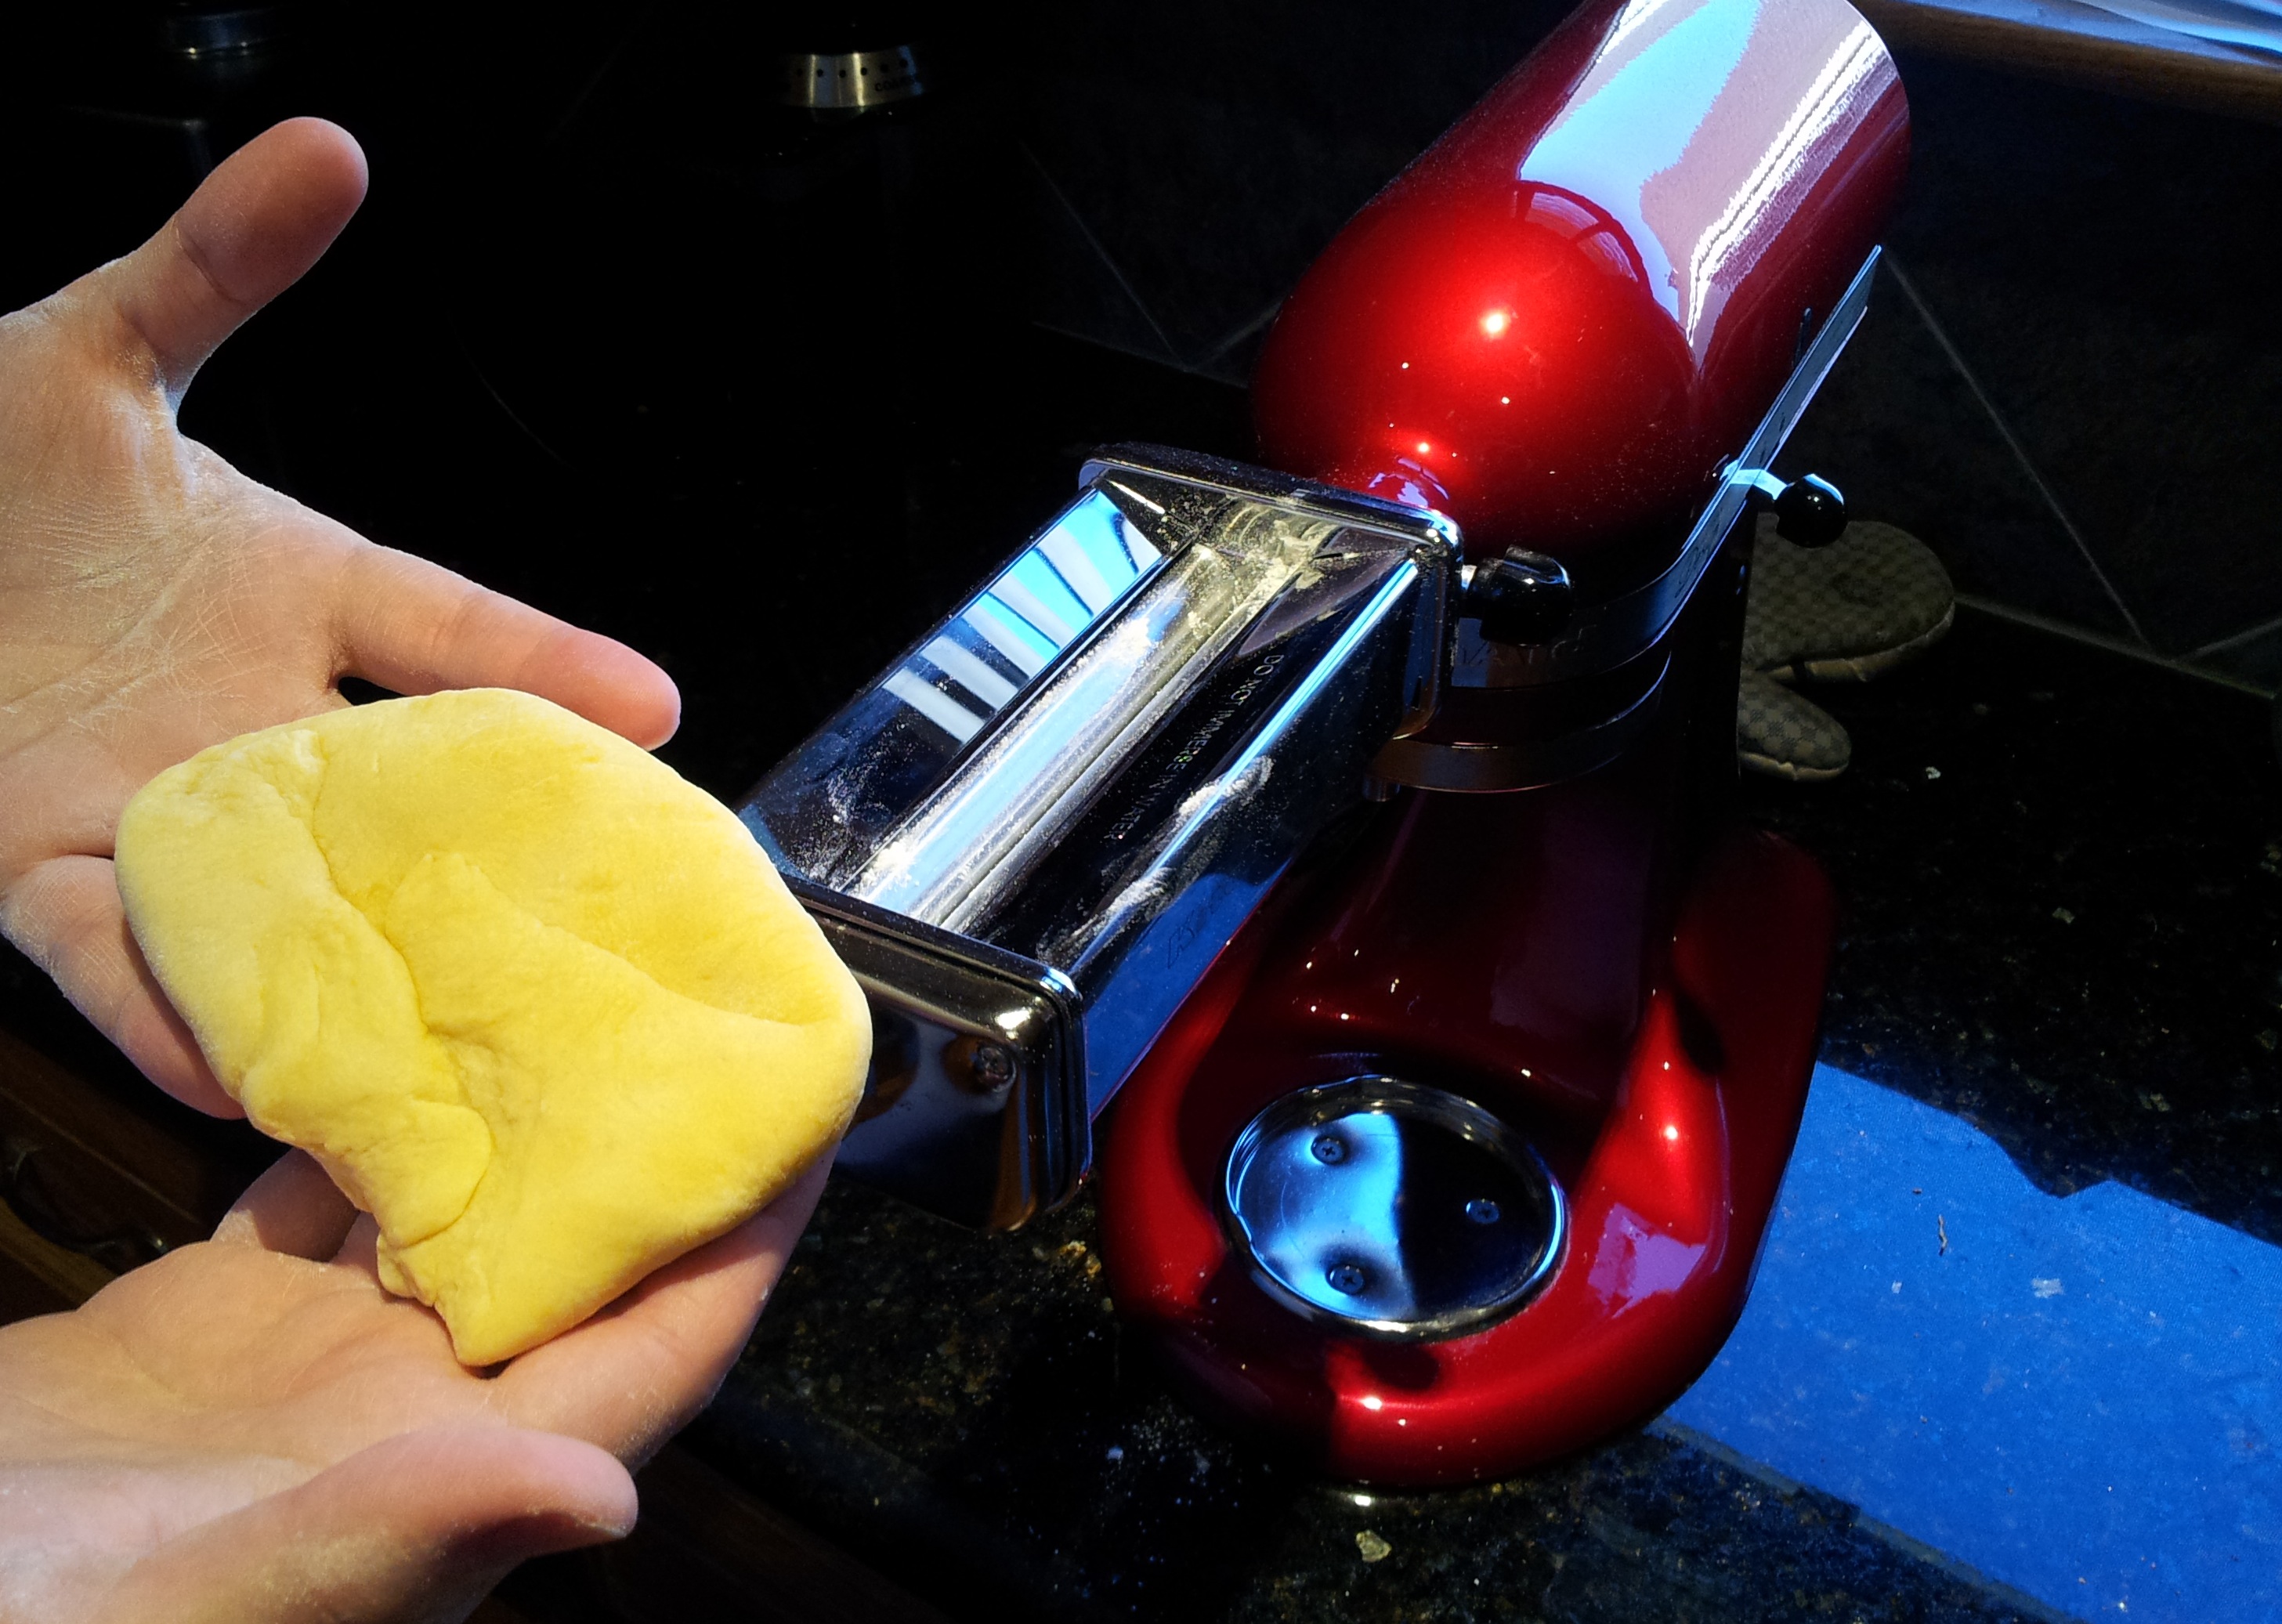 Homemade Fresh Pasta Step 5 - Putting the Pasta Through the Pasta Machine